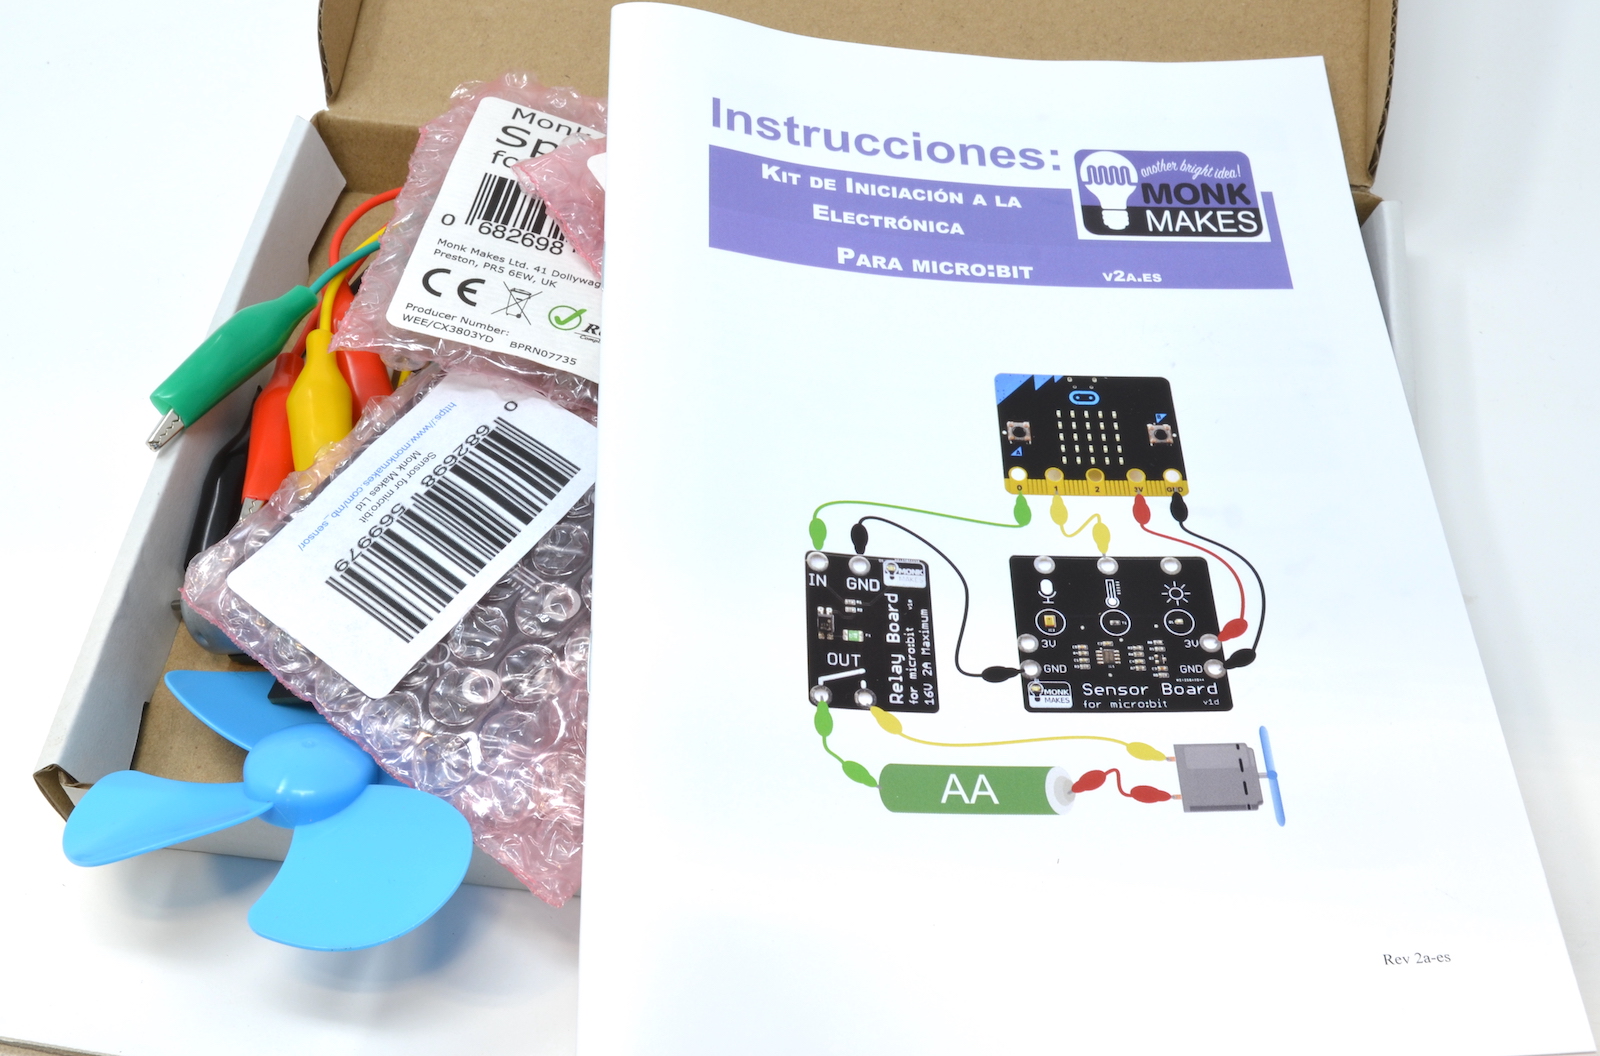 Kit de Iniciación a la Electrónica para micro:bit